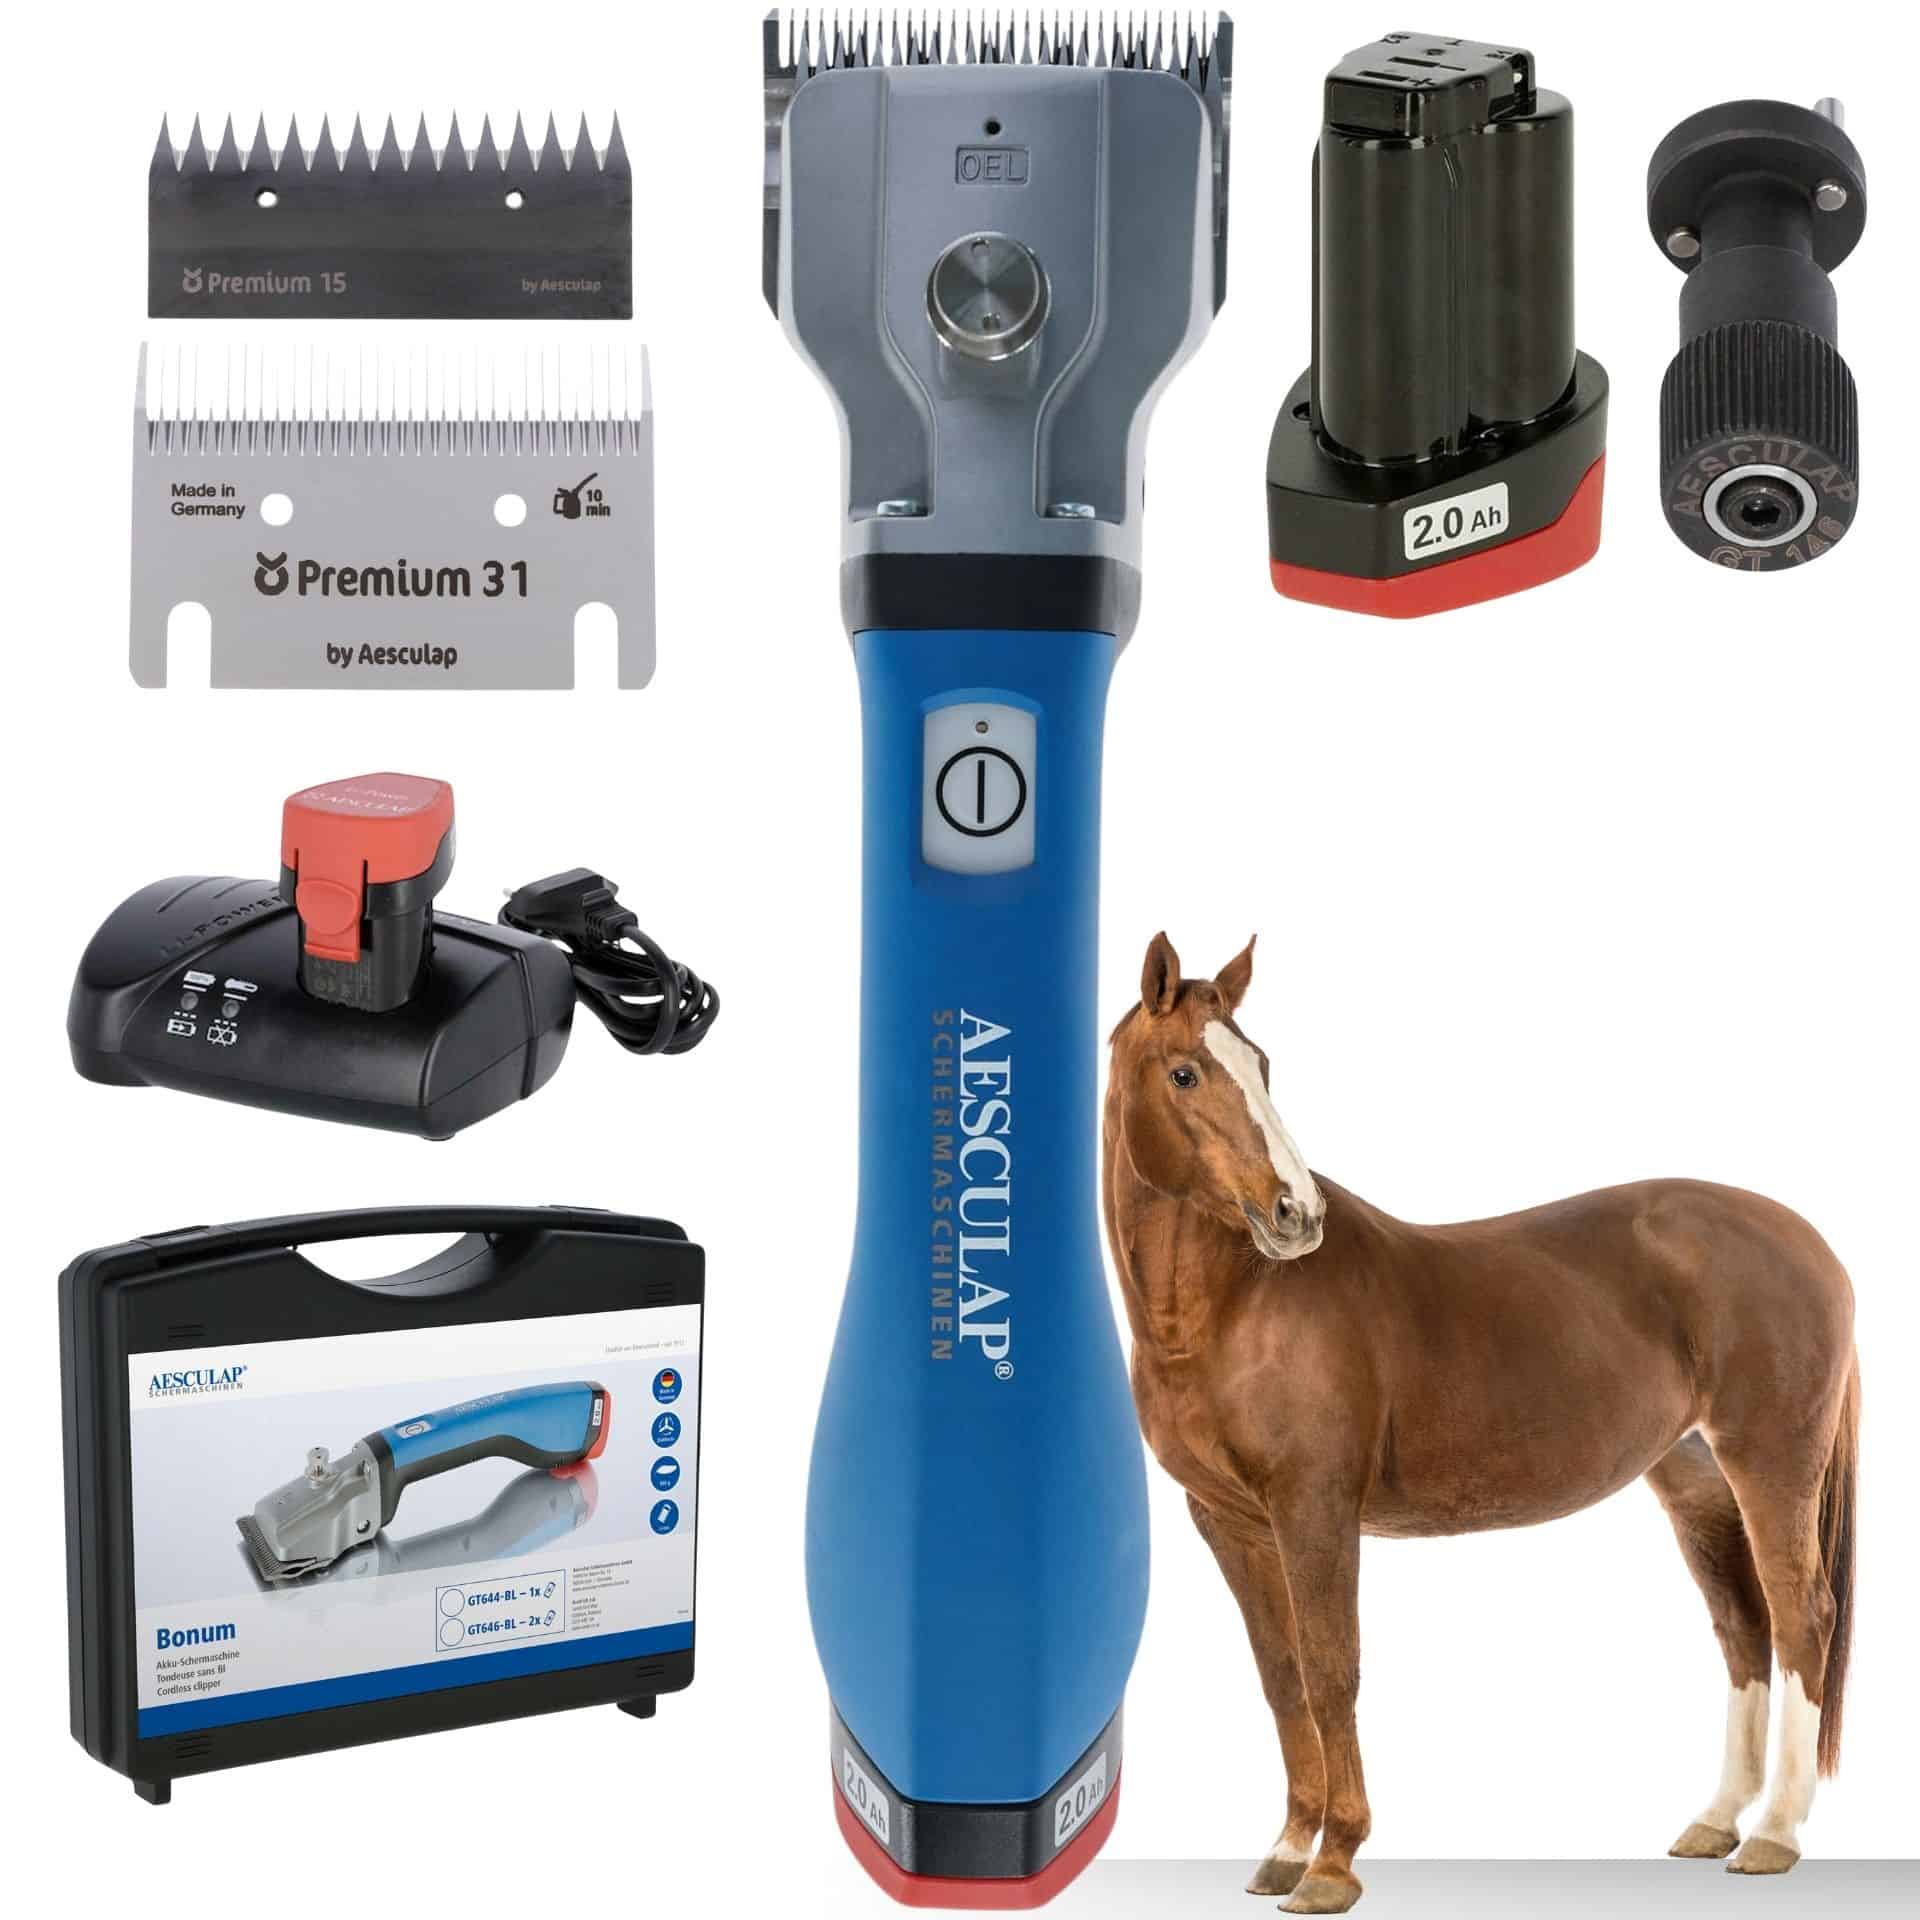 Aesculap batteri-klippmaskin hästar blå 1x batteri + justeringshjälpmedel